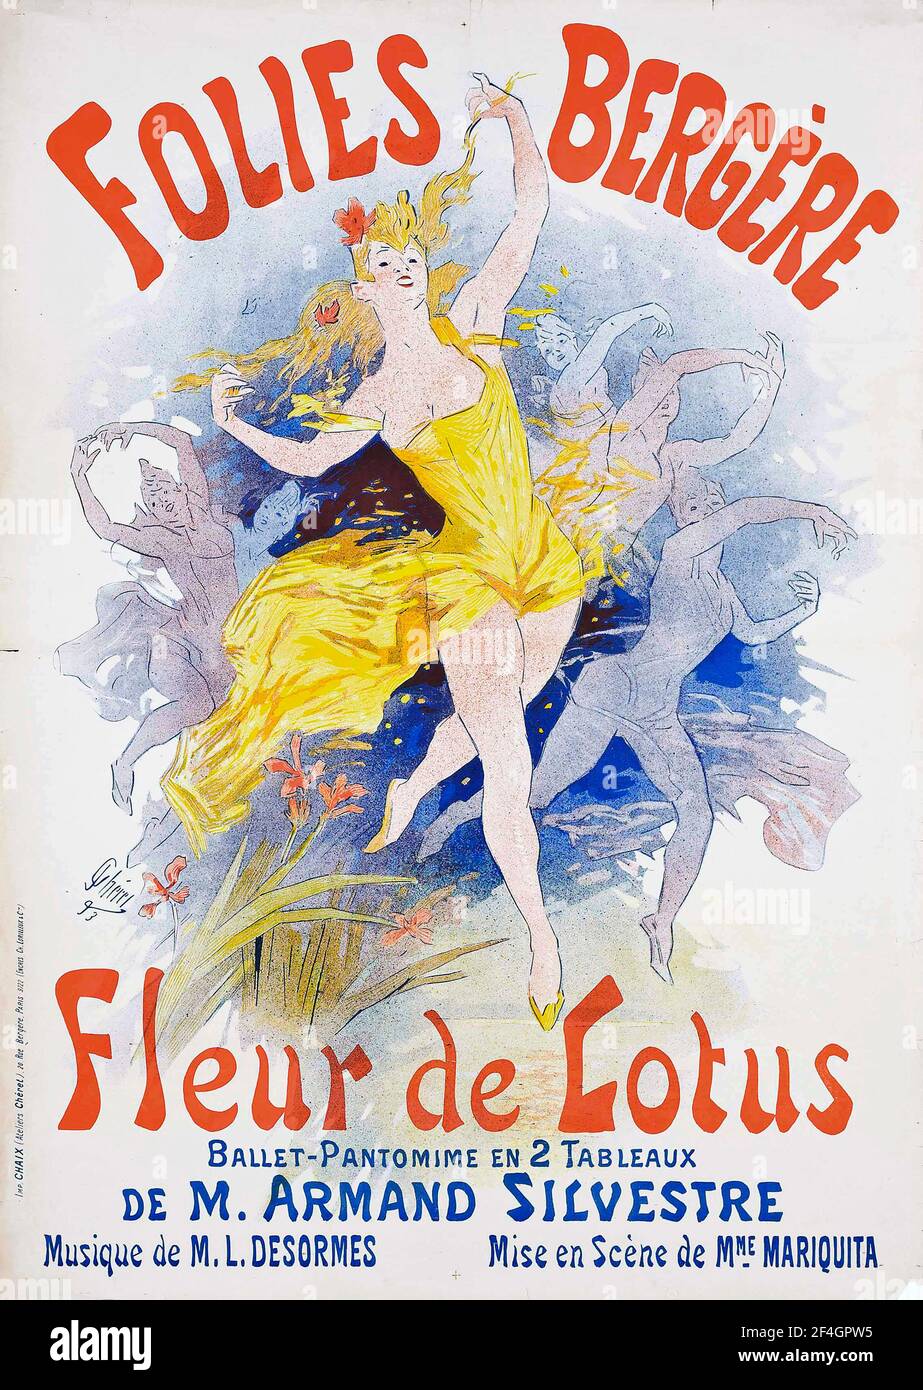 Affiche Folies Bergère de Jules Chéret, 1893 Banque D'Images